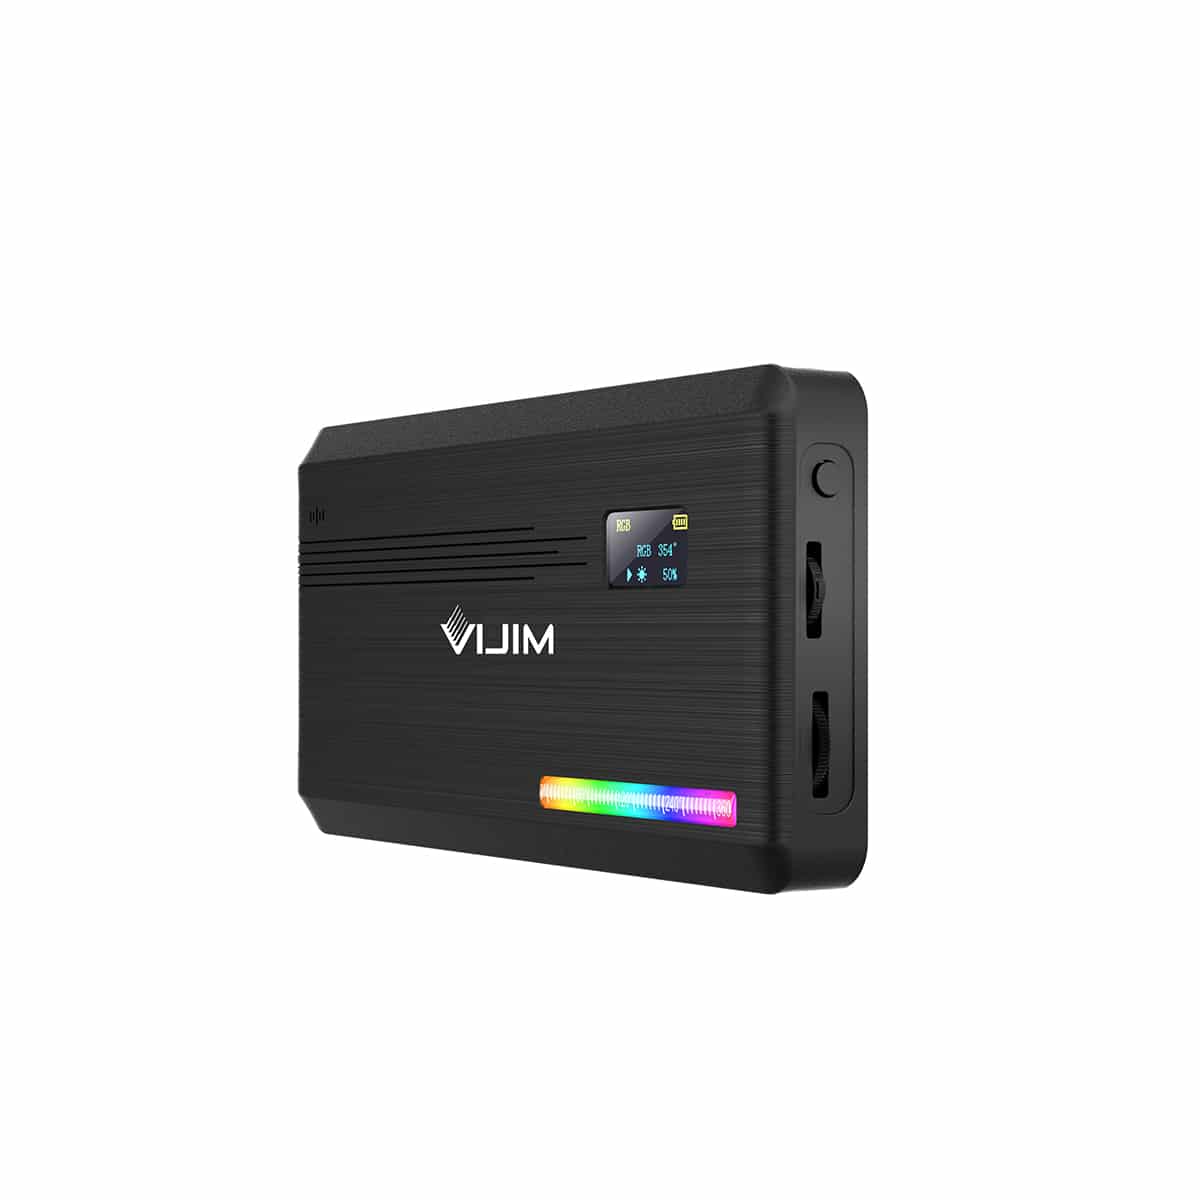 VIJIM RGB Multi Color LED light VL196